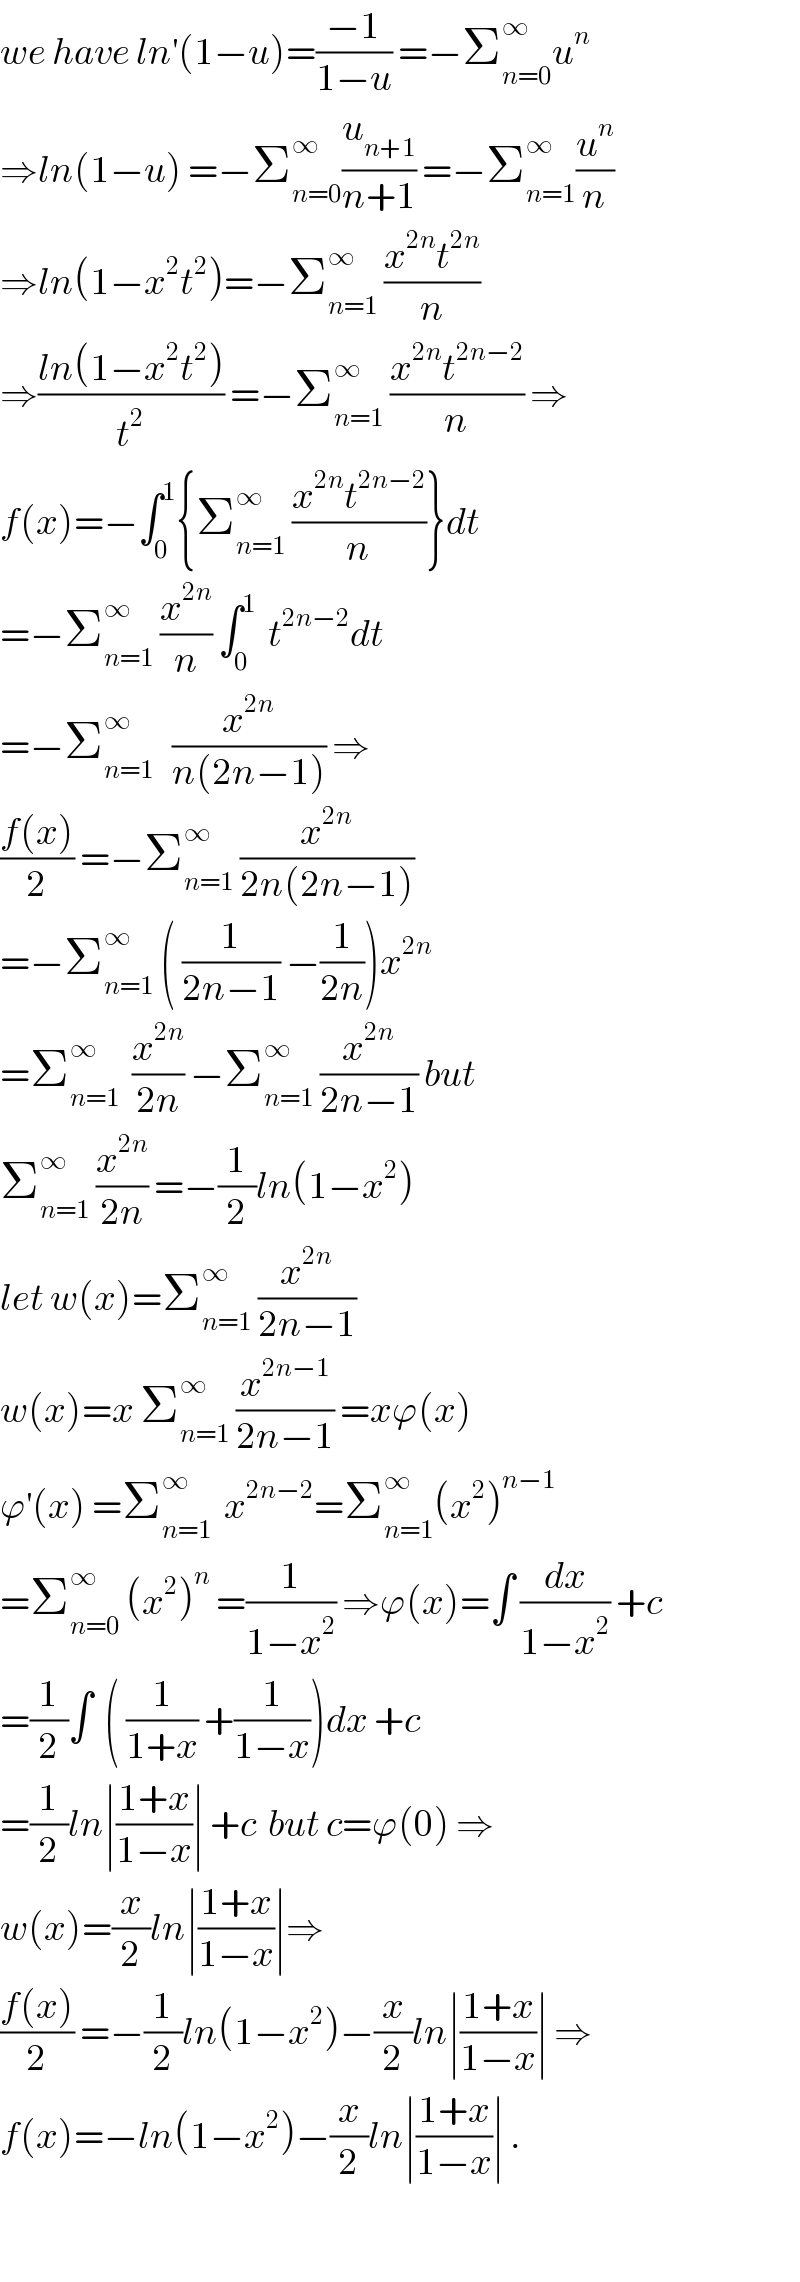 we have ln^′ (1−u)=((−1)/(1−u)) =−Σ_(n=0) ^∞ u^n   ⇒ln(1−u) =−Σ_(n=0) ^∞ (u_(n+1) /(n+1)) =−Σ_(n=1) ^∞ (u^n /n)  ⇒ln(1−x^2 t^2 )=−Σ_(n=1) ^∞  ((x^(2n) t^(2n) )/n)  ⇒((ln(1−x^2 t^2 ))/t^2 ) =−Σ_(n=1) ^∞  ((x^(2n) t^(2n−2) )/n) ⇒  f(x)=−∫_0 ^1 {Σ_(n=1) ^∞  ((x^(2n) t^(2n−2) )/n)}dt  =−Σ_(n=1) ^∞  (x^(2n) /n) ∫_0 ^1   t^(2n−2) dt  =−Σ_(n=1) ^∞    (x^(2n) /(n(2n−1))) ⇒  ((f(x))/2) =−Σ_(n=1) ^∞  (x^(2n) /(2n(2n−1)))  =−Σ_(n=1) ^∞  ( (1/(2n−1)) −(1/(2n)))x^(2n)   =Σ_(n=1) ^∞   (x^(2n) /(2n)) −Σ_(n=1) ^∞  (x^(2n) /(2n−1)) but  Σ_(n=1) ^∞  (x^(2n) /(2n)) =−(1/2)ln(1−x^2 )  let w(x)=Σ_(n=1) ^∞  (x^(2n) /(2n−1))  w(x)=x Σ_(n=1) ^∞  (x^(2n−1) /(2n−1)) =xϕ(x)  ϕ^′ (x) =Σ_(n=1) ^∞   x^(2n−2) =Σ_(n=1) ^∞ (x^2 )^(n−1)   =Σ_(n=0) ^∞  (x^2 )^n  =(1/(1−x^2 )) ⇒ϕ(x)=∫ (dx/(1−x^2 )) +c  =(1/2)∫  ( (1/(1+x)) +(1/(1−x)))dx +c  =(1/2)ln∣((1+x)/(1−x))∣ +c  but c=ϕ(0) ⇒  w(x)=(x/2)ln∣((1+x)/(1−x))∣⇒  ((f(x))/2) =−(1/2)ln(1−x^2 )−(x/2)ln∣((1+x)/(1−x))∣ ⇒  f(x)=−ln(1−x^2 )−(x/2)ln∣((1+x)/(1−x))∣ .    